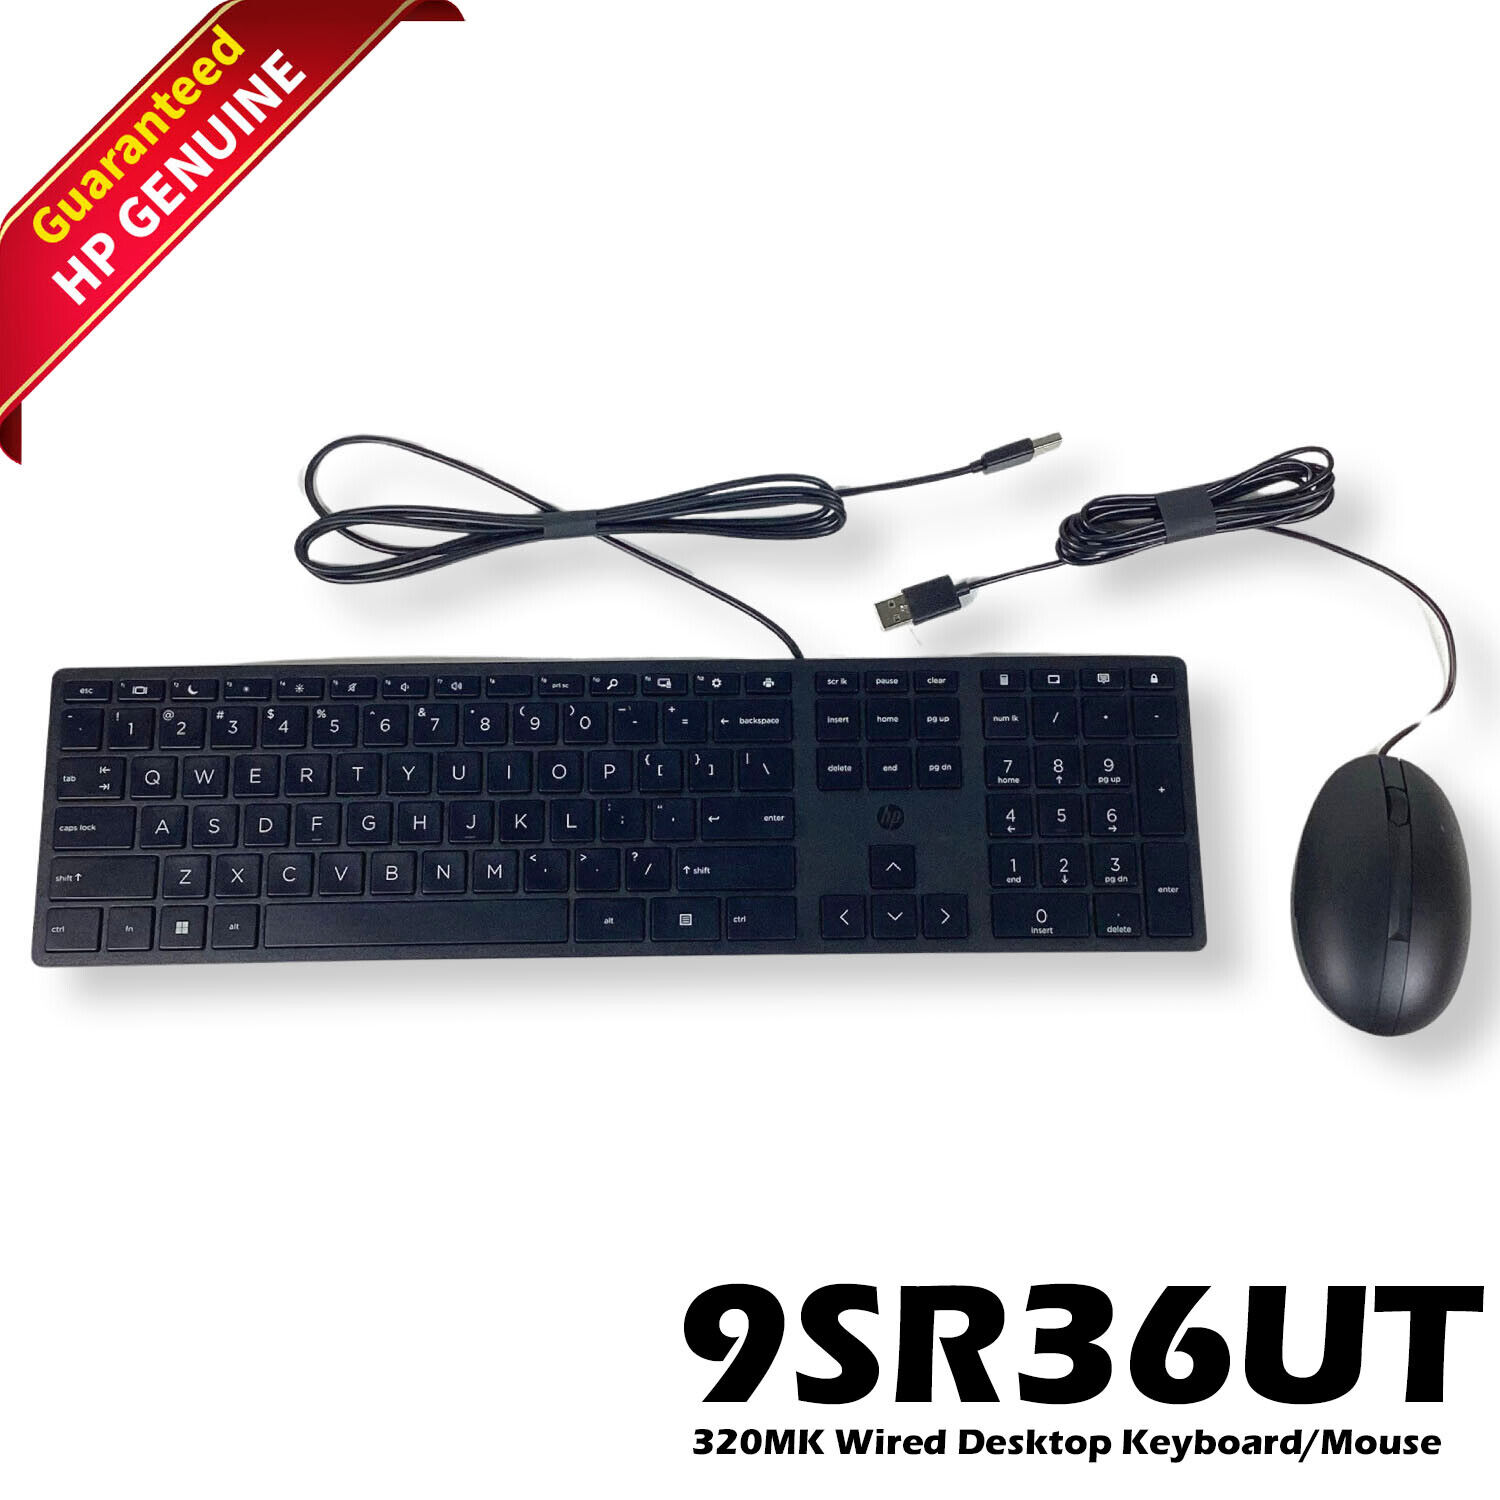 Genuine HP 320MK Wired USB Optical Mouse and Keyboard Combo 9SR36UT#ABA+AA 9SR36